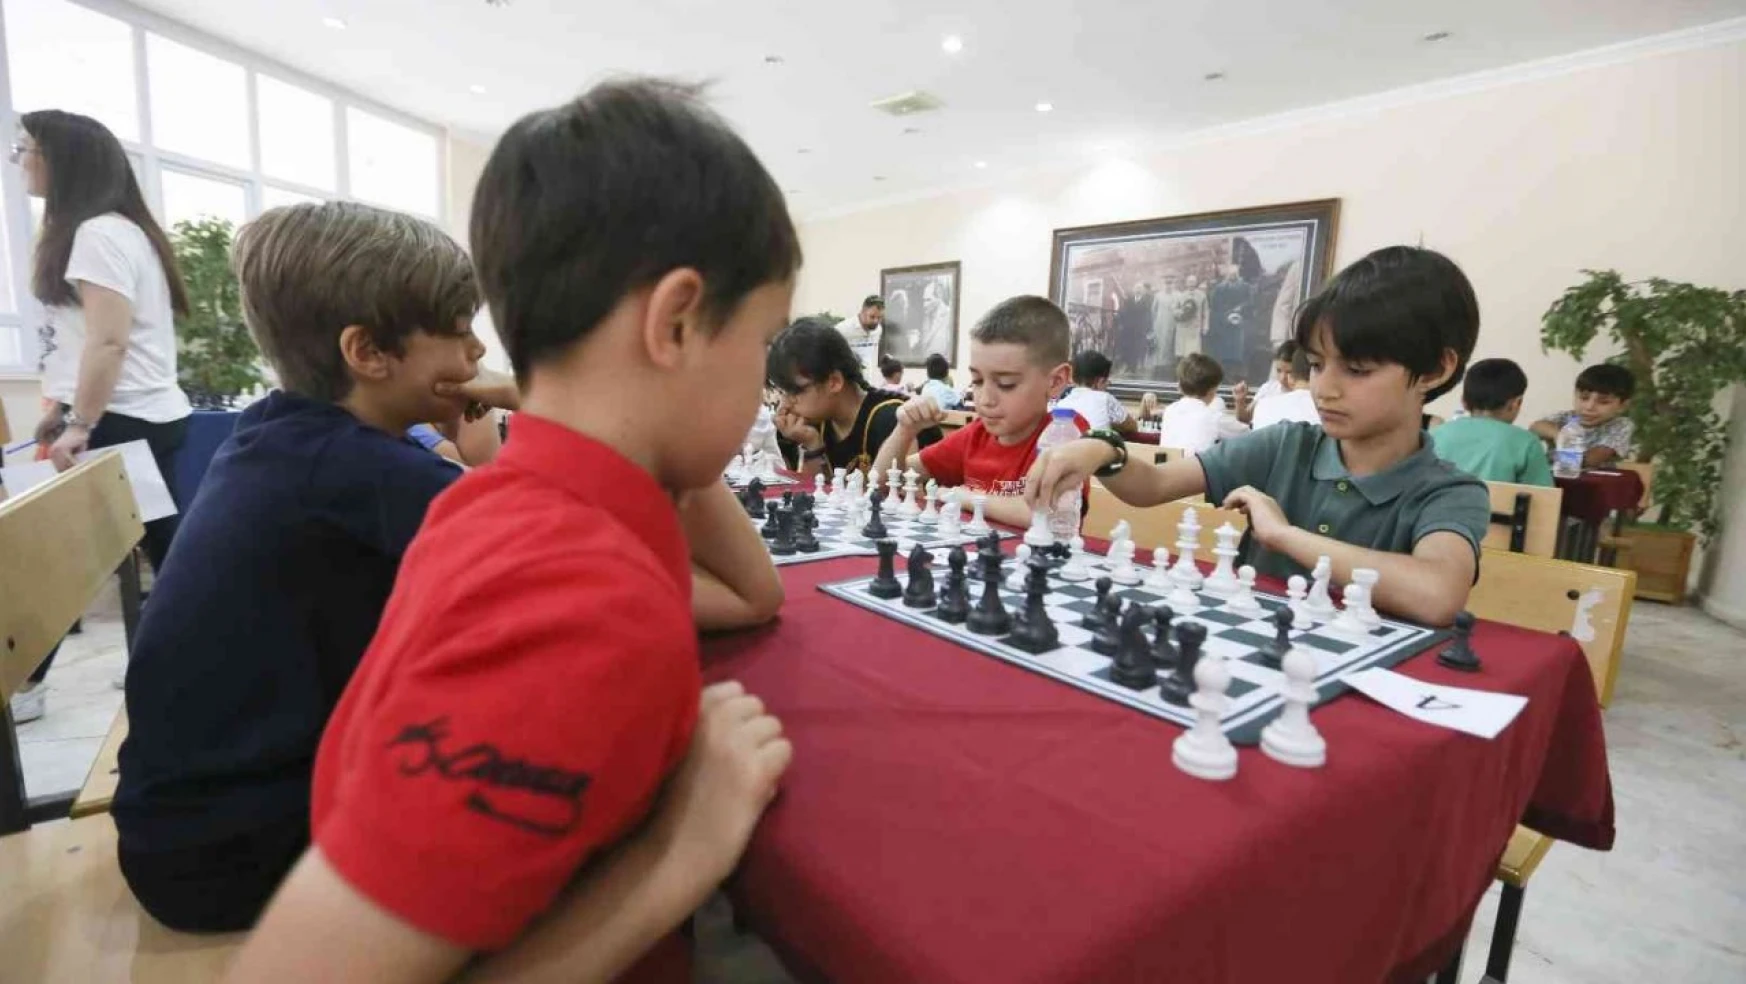 Büyükşehir'in kültür merkezleri genç satranççılar yetiştiriyor